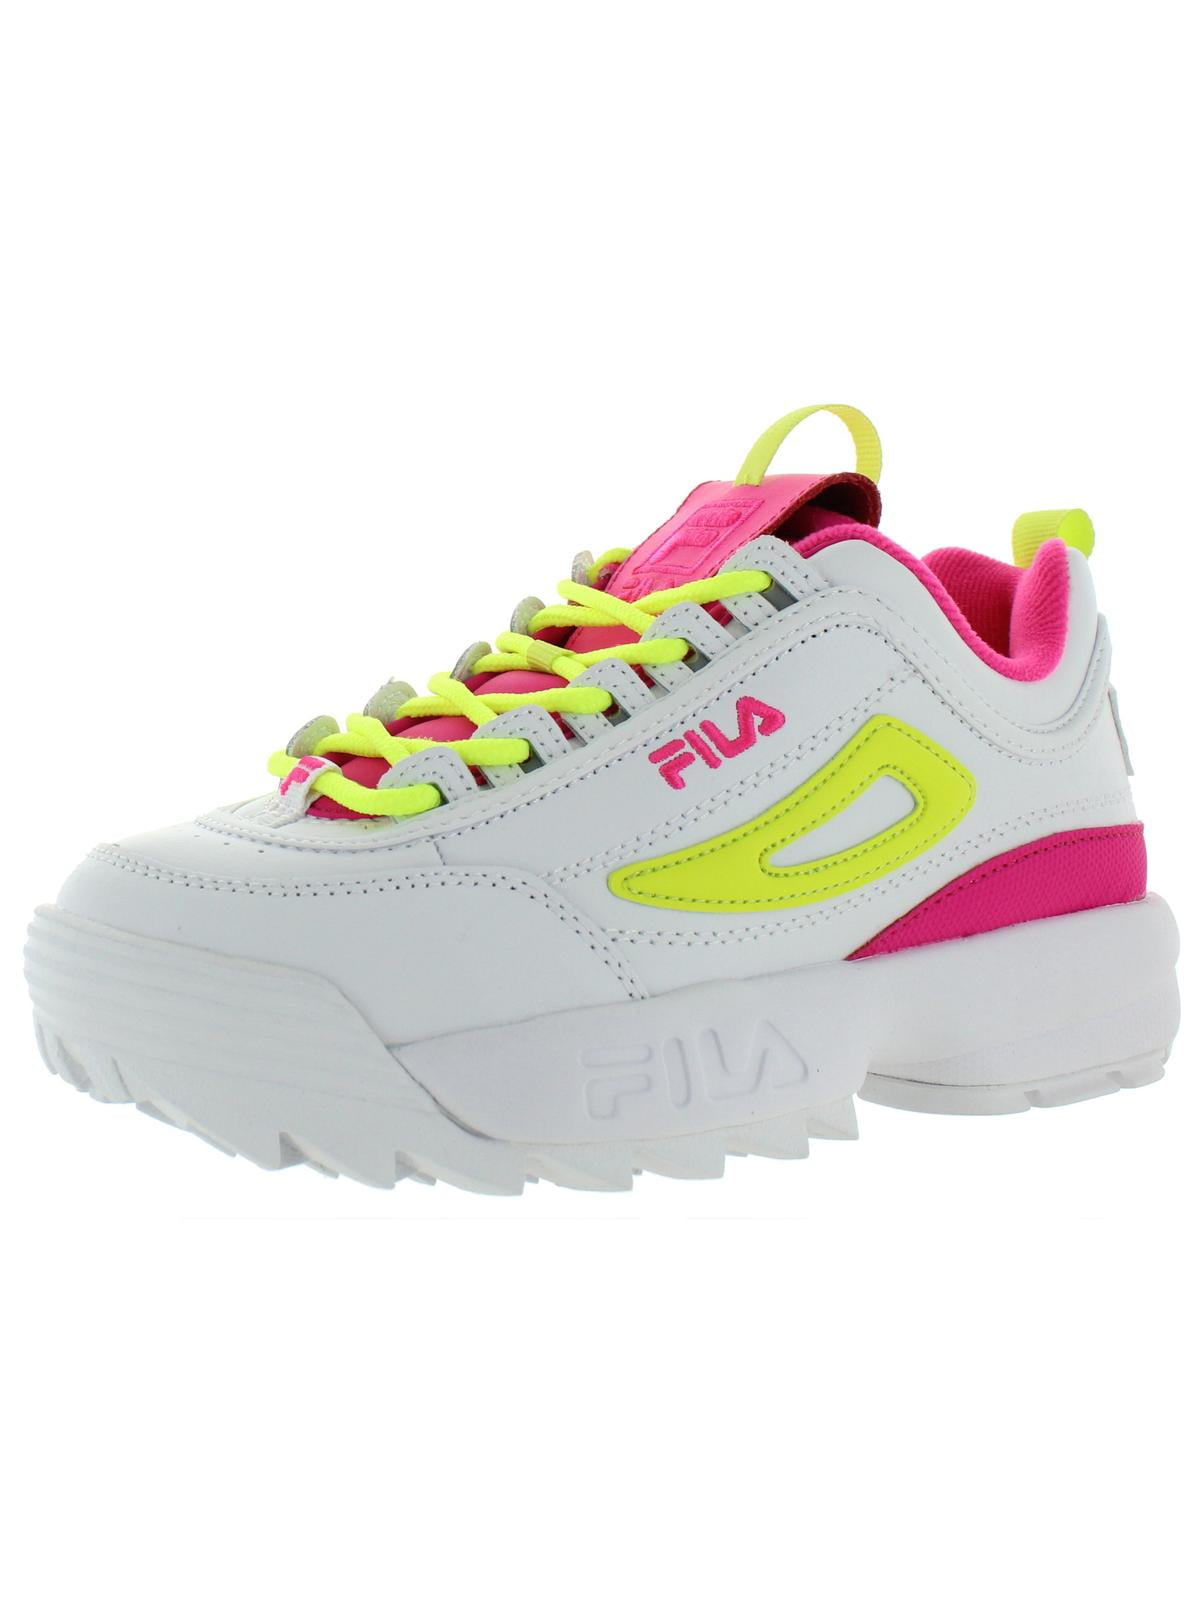 sjælden korn jomfru FILA - Fila Womens Disruptor II Premium Workout Fitness Running Shoes -  Walmart.com - Walmart.com